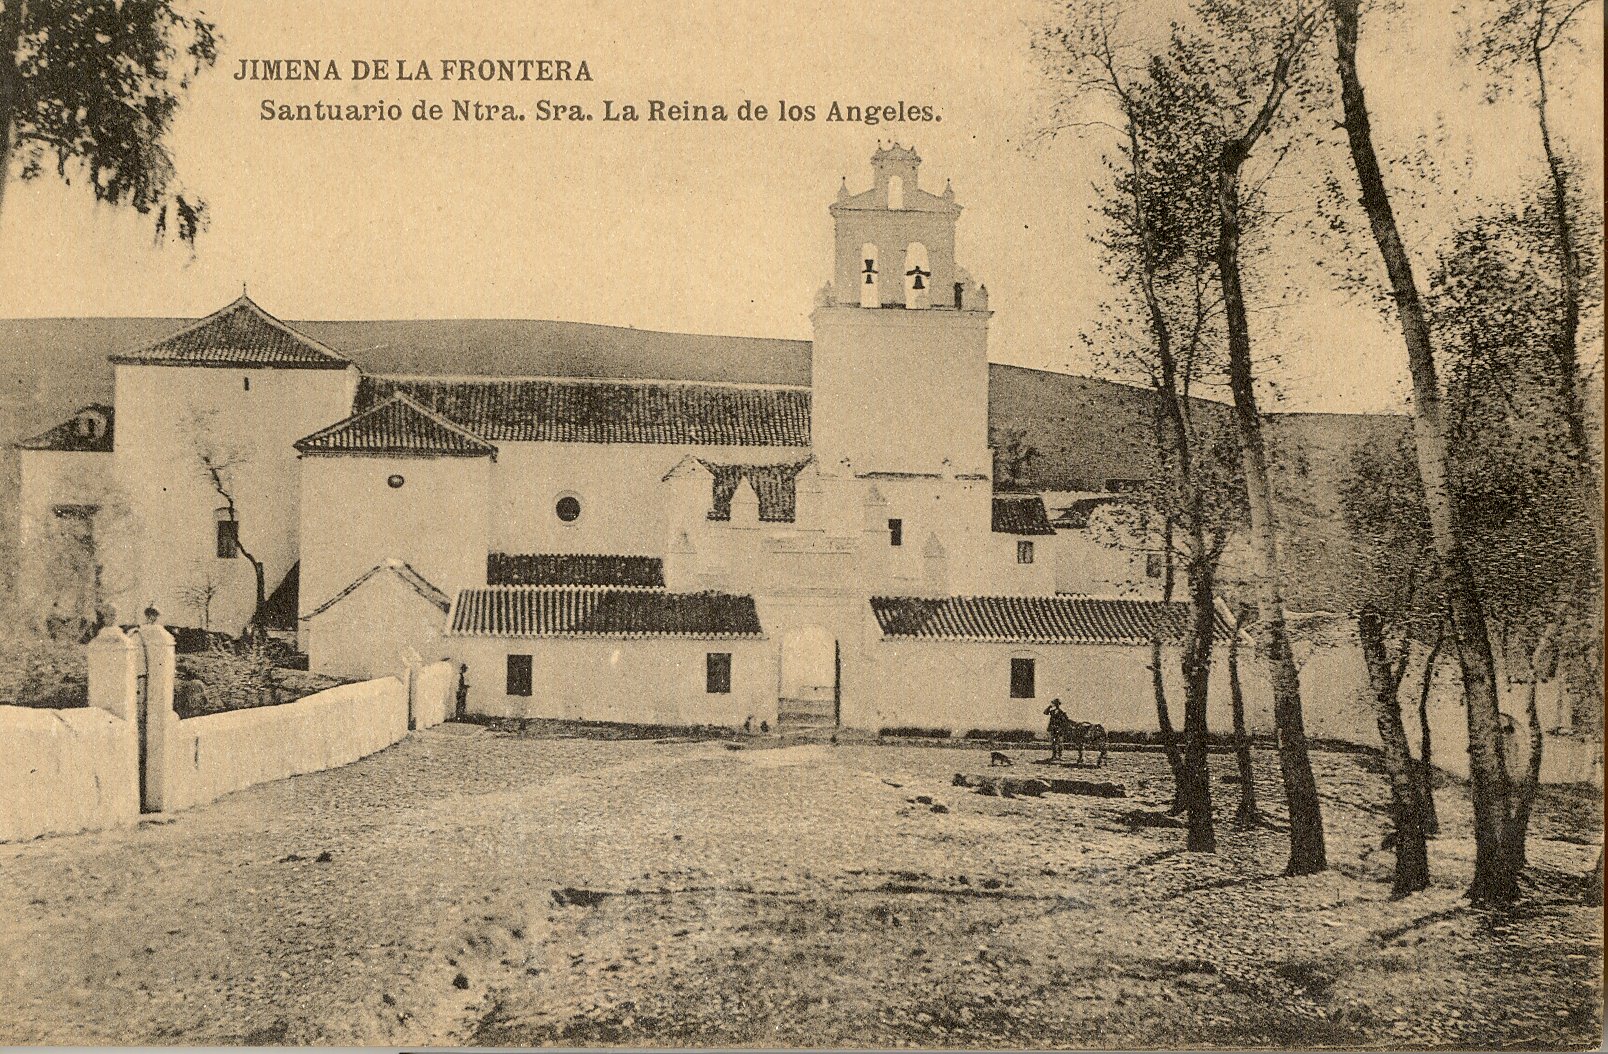 JIMENA DE LA FRONTERA: Vista del Santuario de Ntra. Sra. la Reina de los Ángeles desde la vía ferrea.1918 (DJ07637)